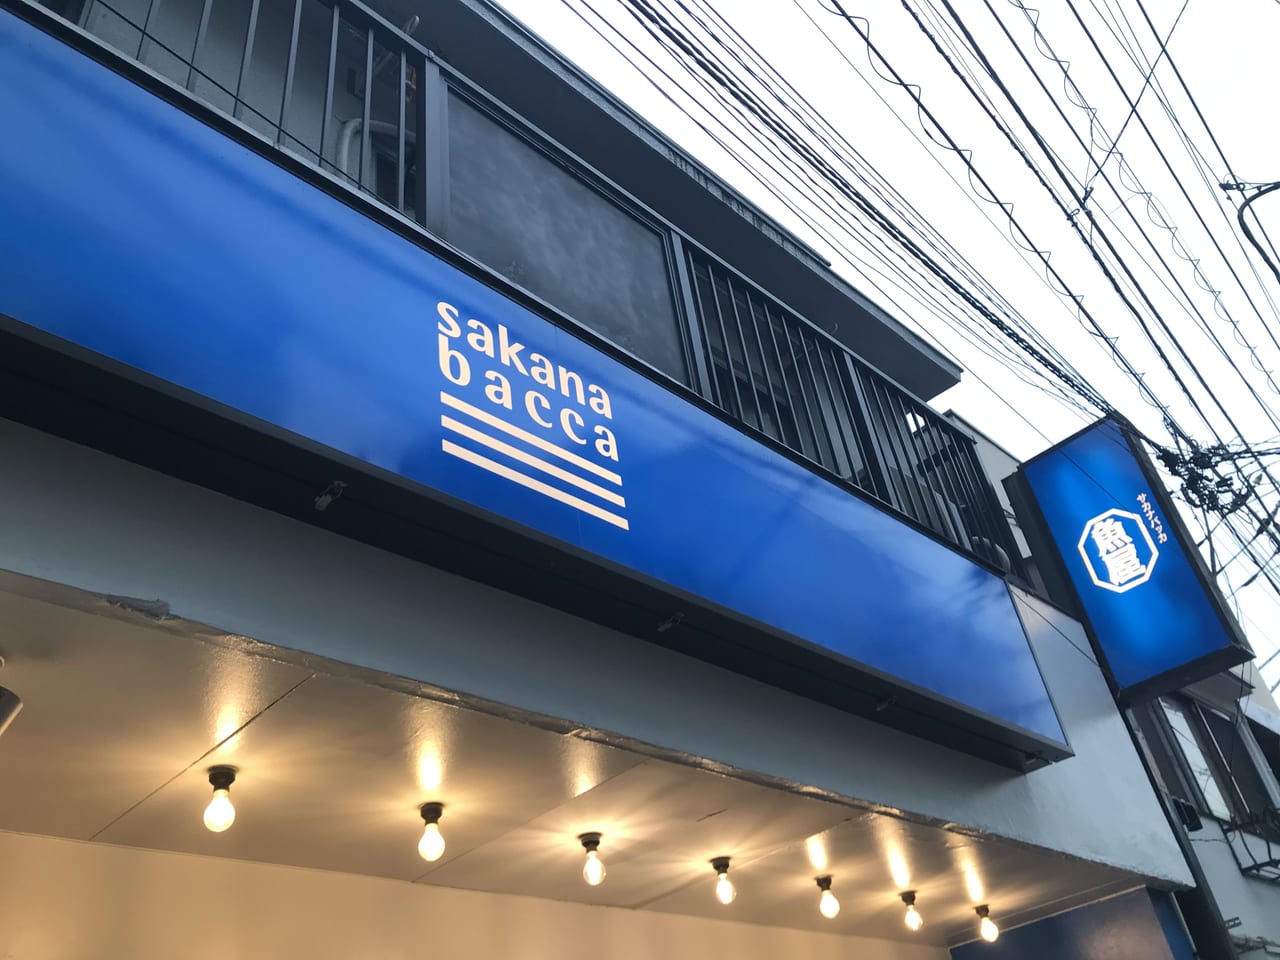 世田谷区サカナバッカ豪徳寺店が2021年7月2日オープンしました。